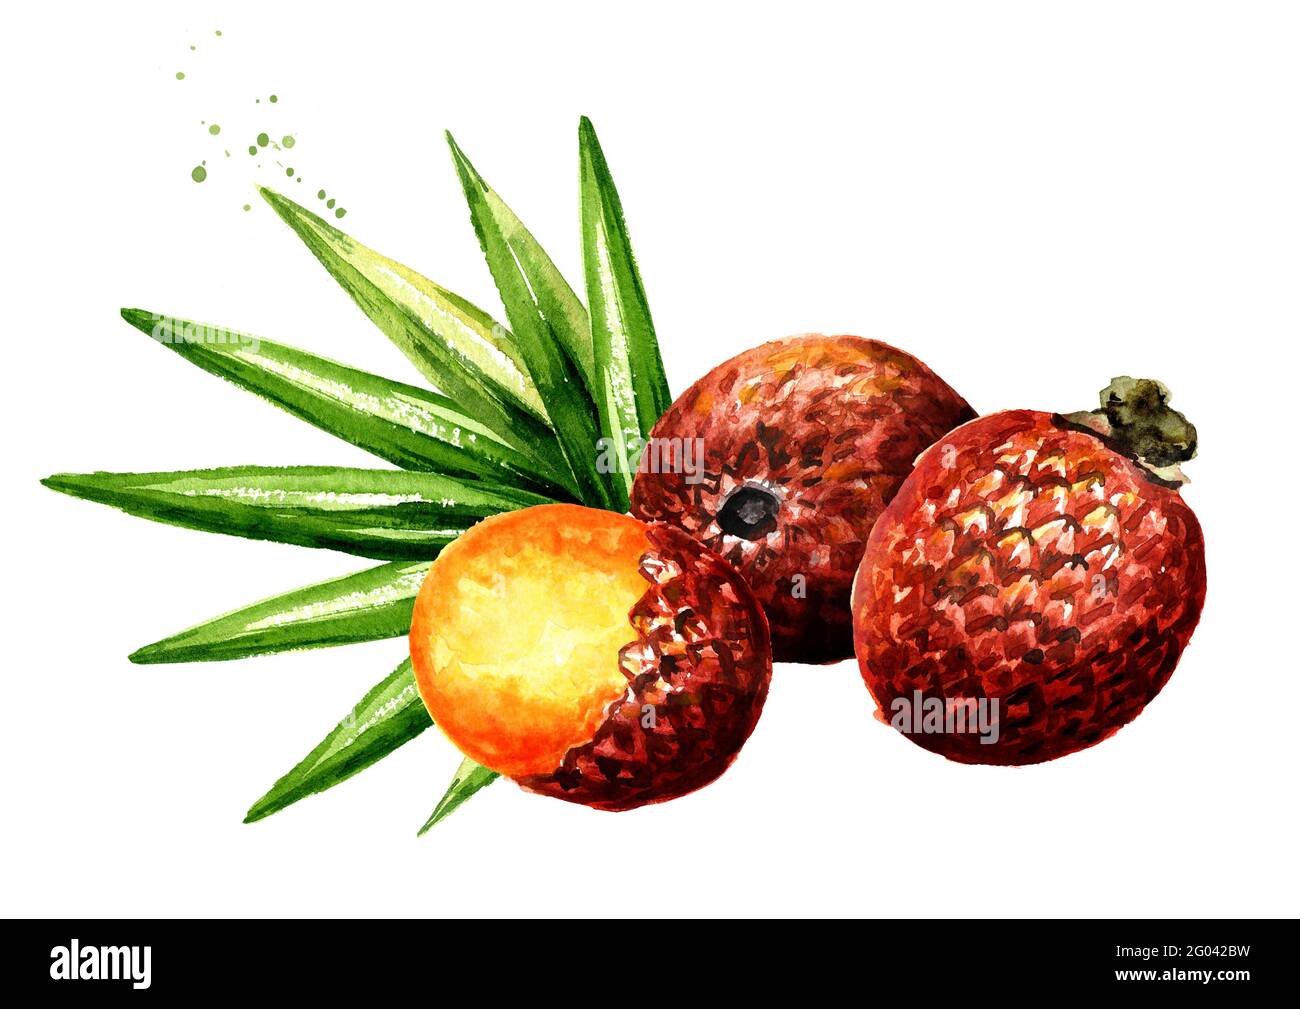 Fruit Buriti exotique Aguaje ou Moriche fruit de palme mauritia flexuosa. Aquarelle illustration dessinée à la main isolée sur fond blanc Banque D'Images